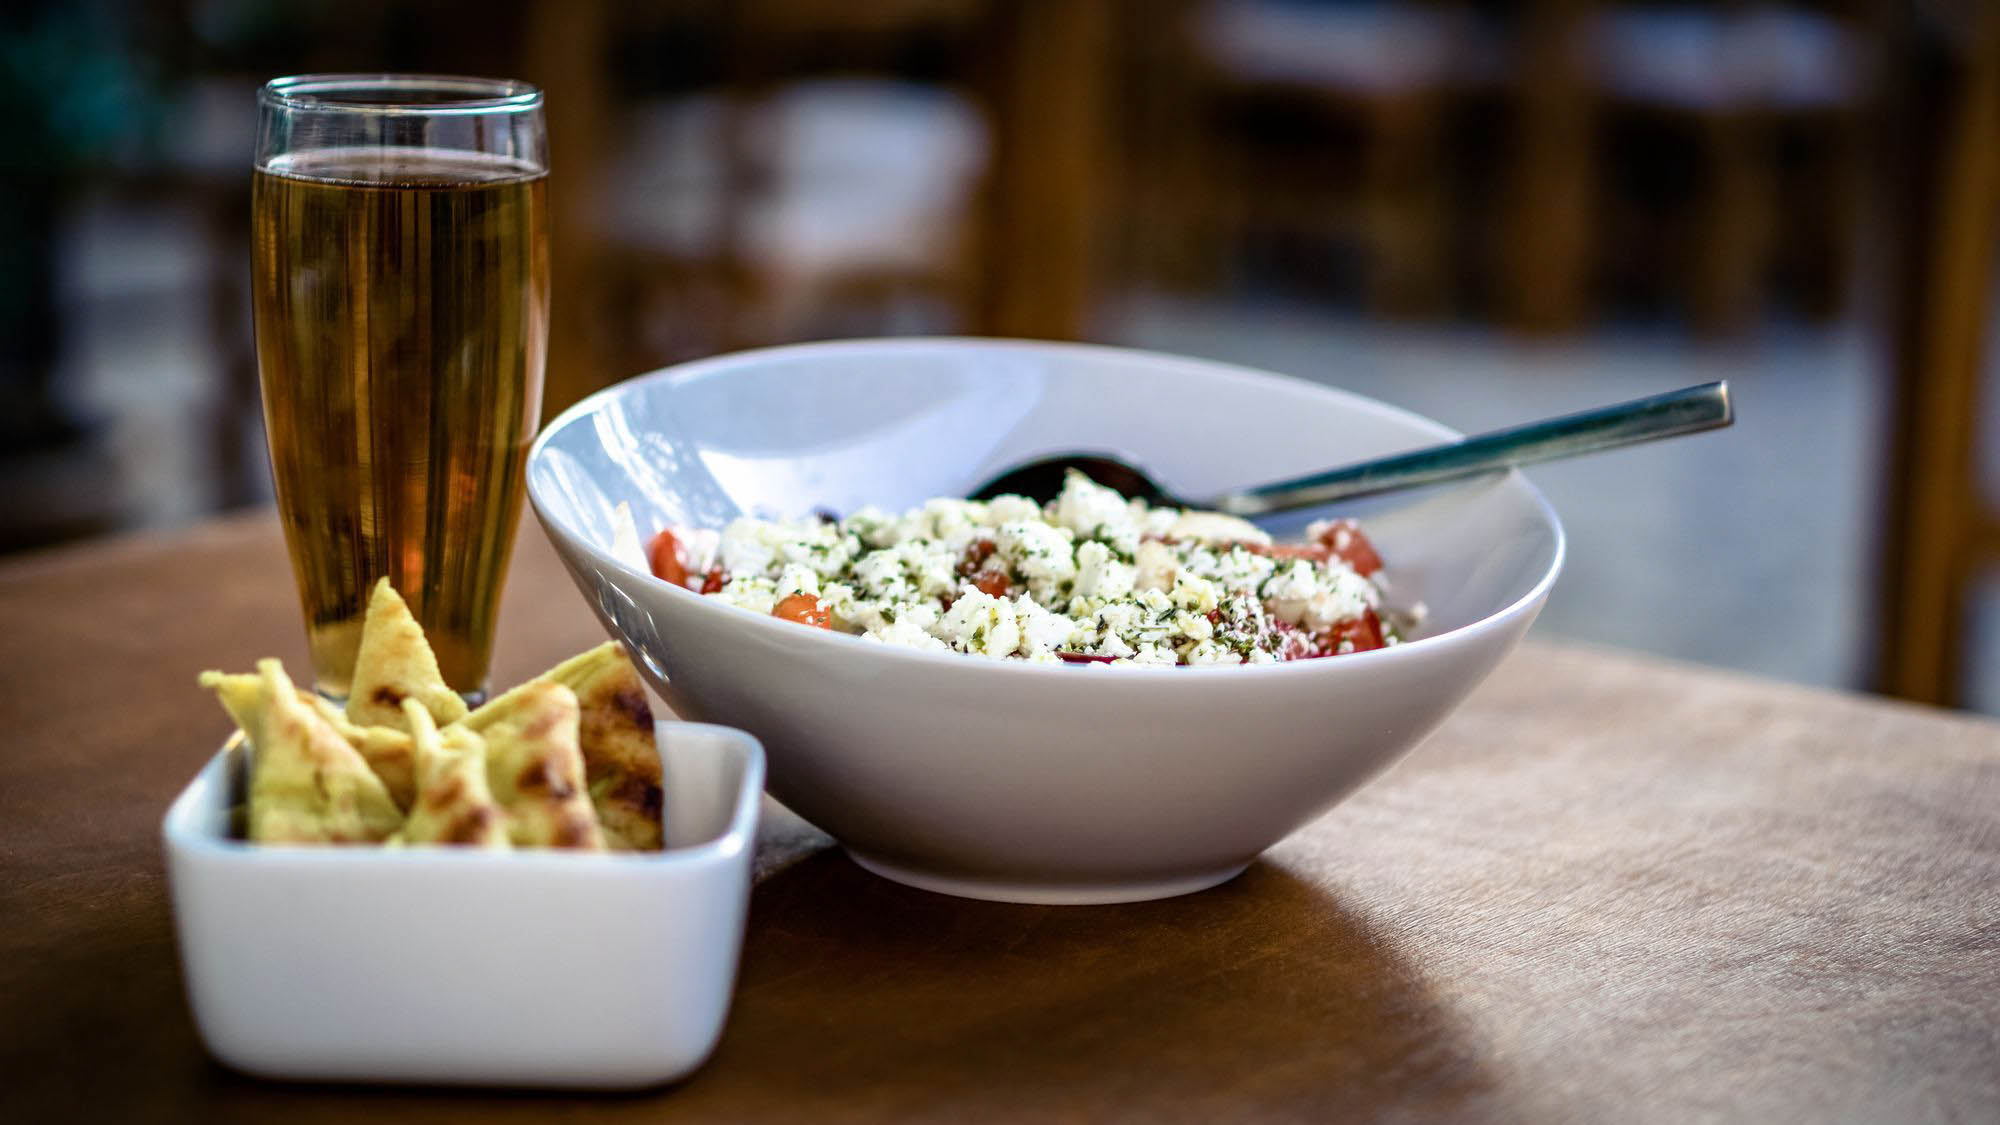 pięknie podana sałatka z pieczywem i piwem, danie greckie